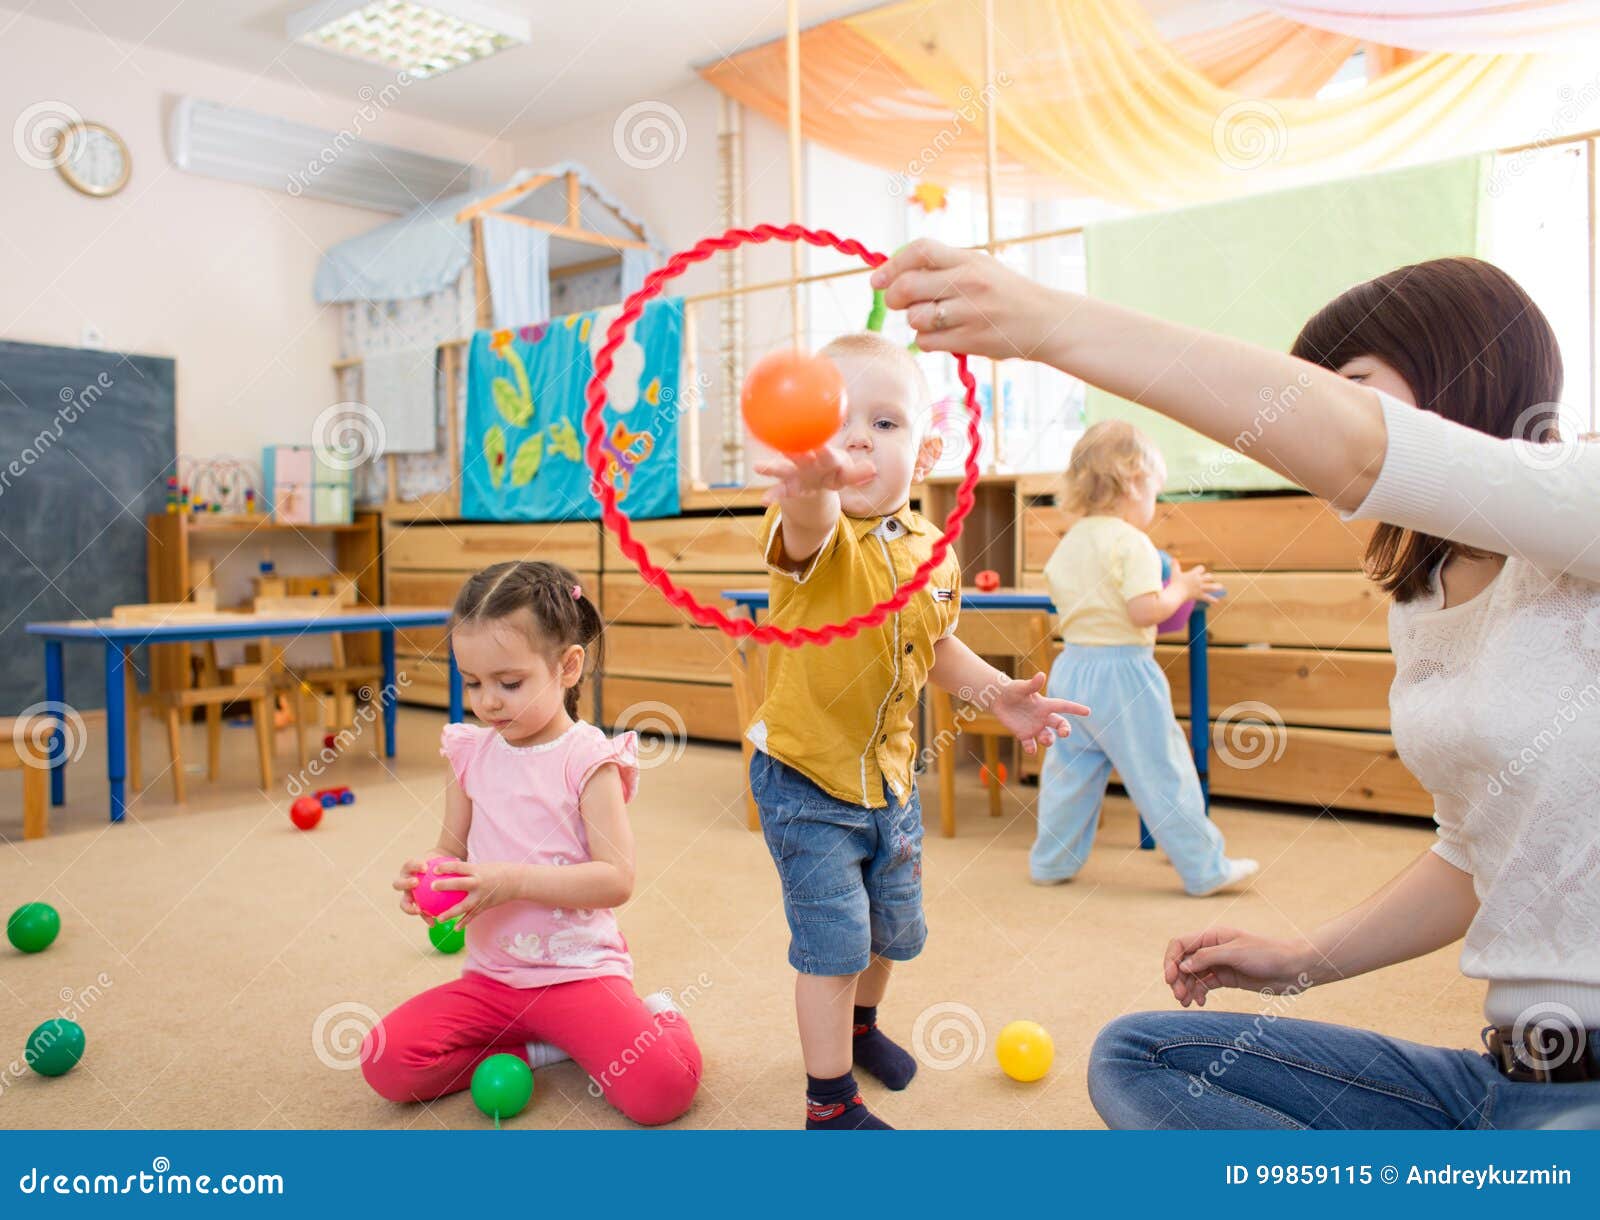 Gluckliche Kinder Die Mit Ball Und Ring Im Kindergarten Spielen Stockbild Bild Von Gluckliche Ball